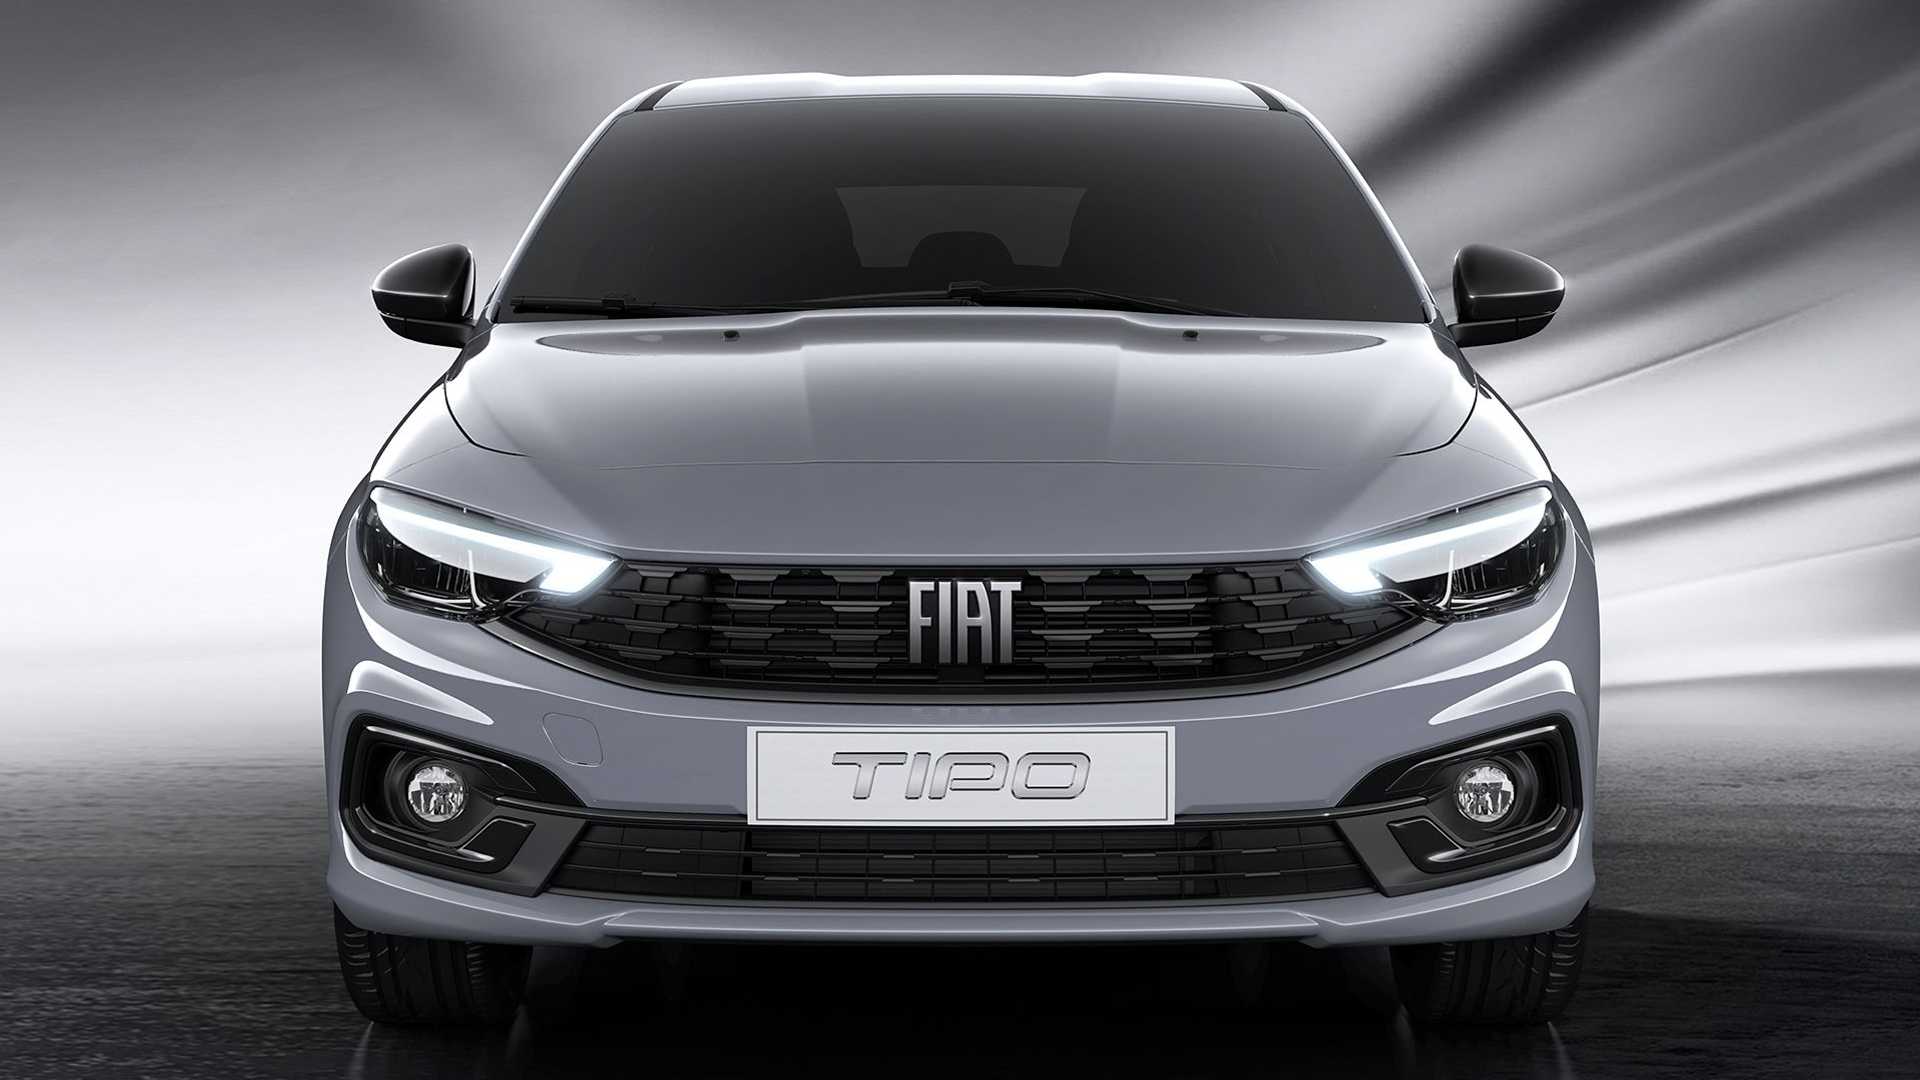 Yeni Fiat Egea City Sport paketiyle geliyor